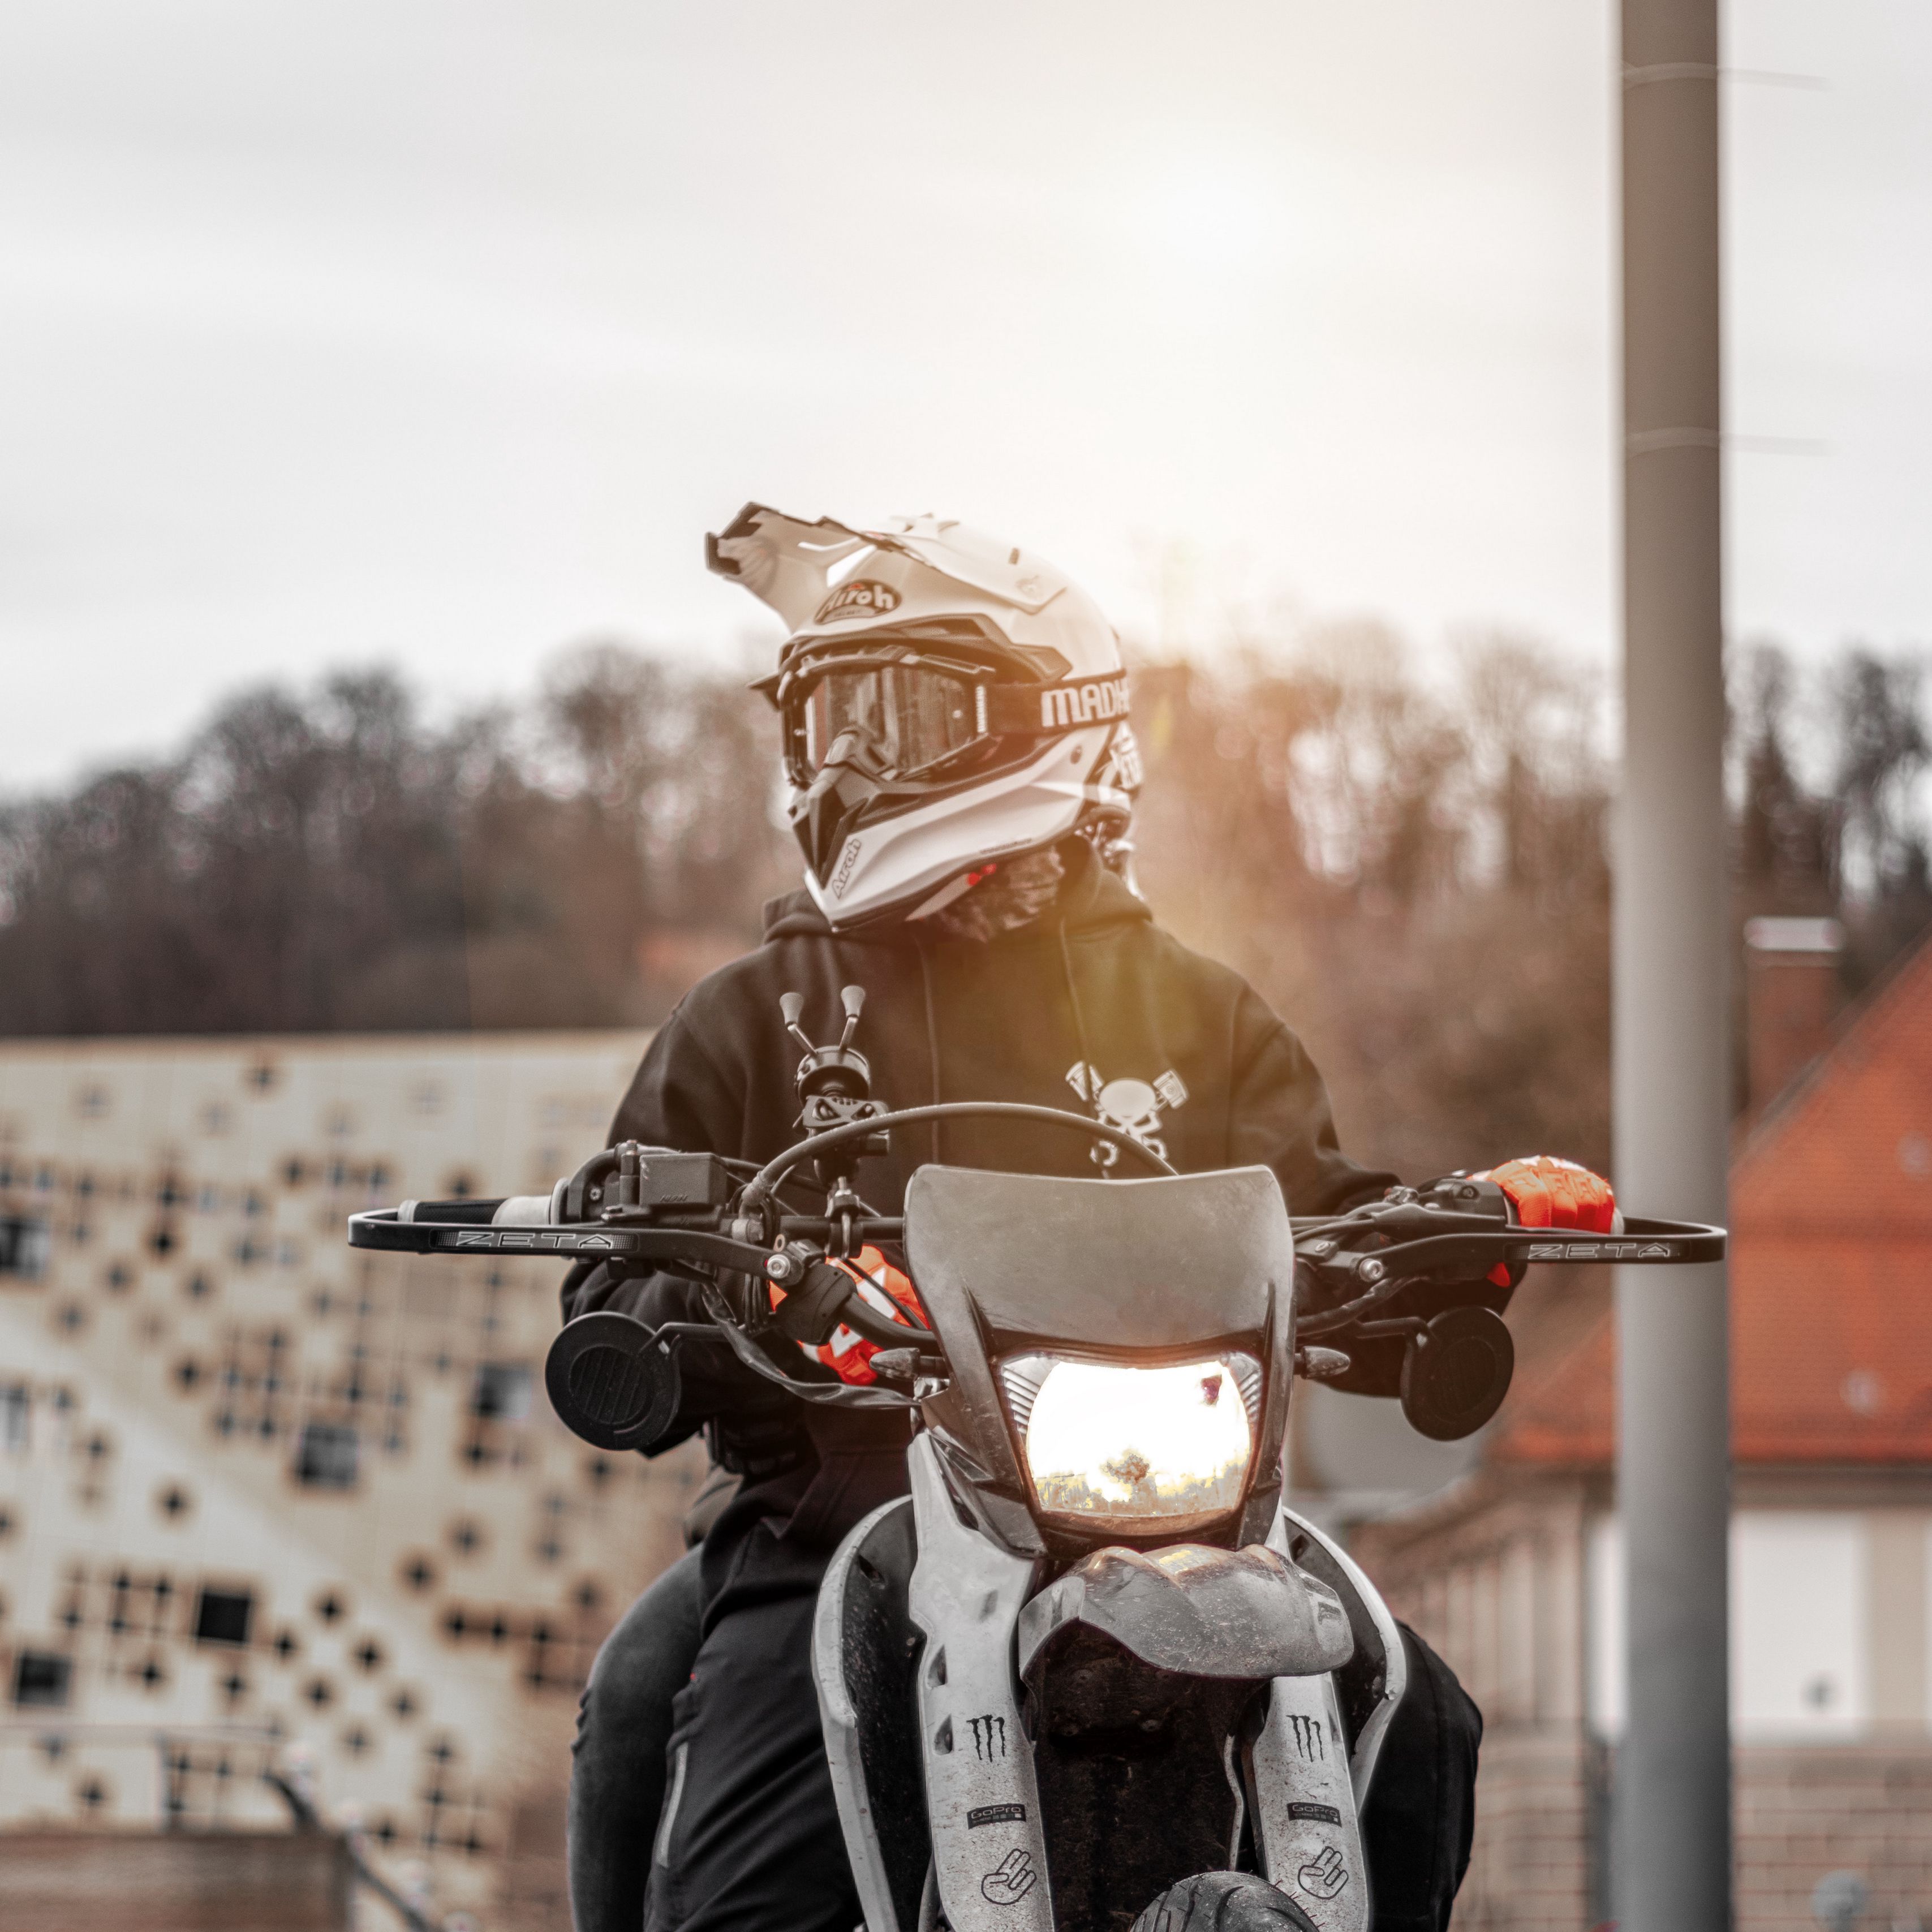 фото байкеров на мотоциклах в шлемах